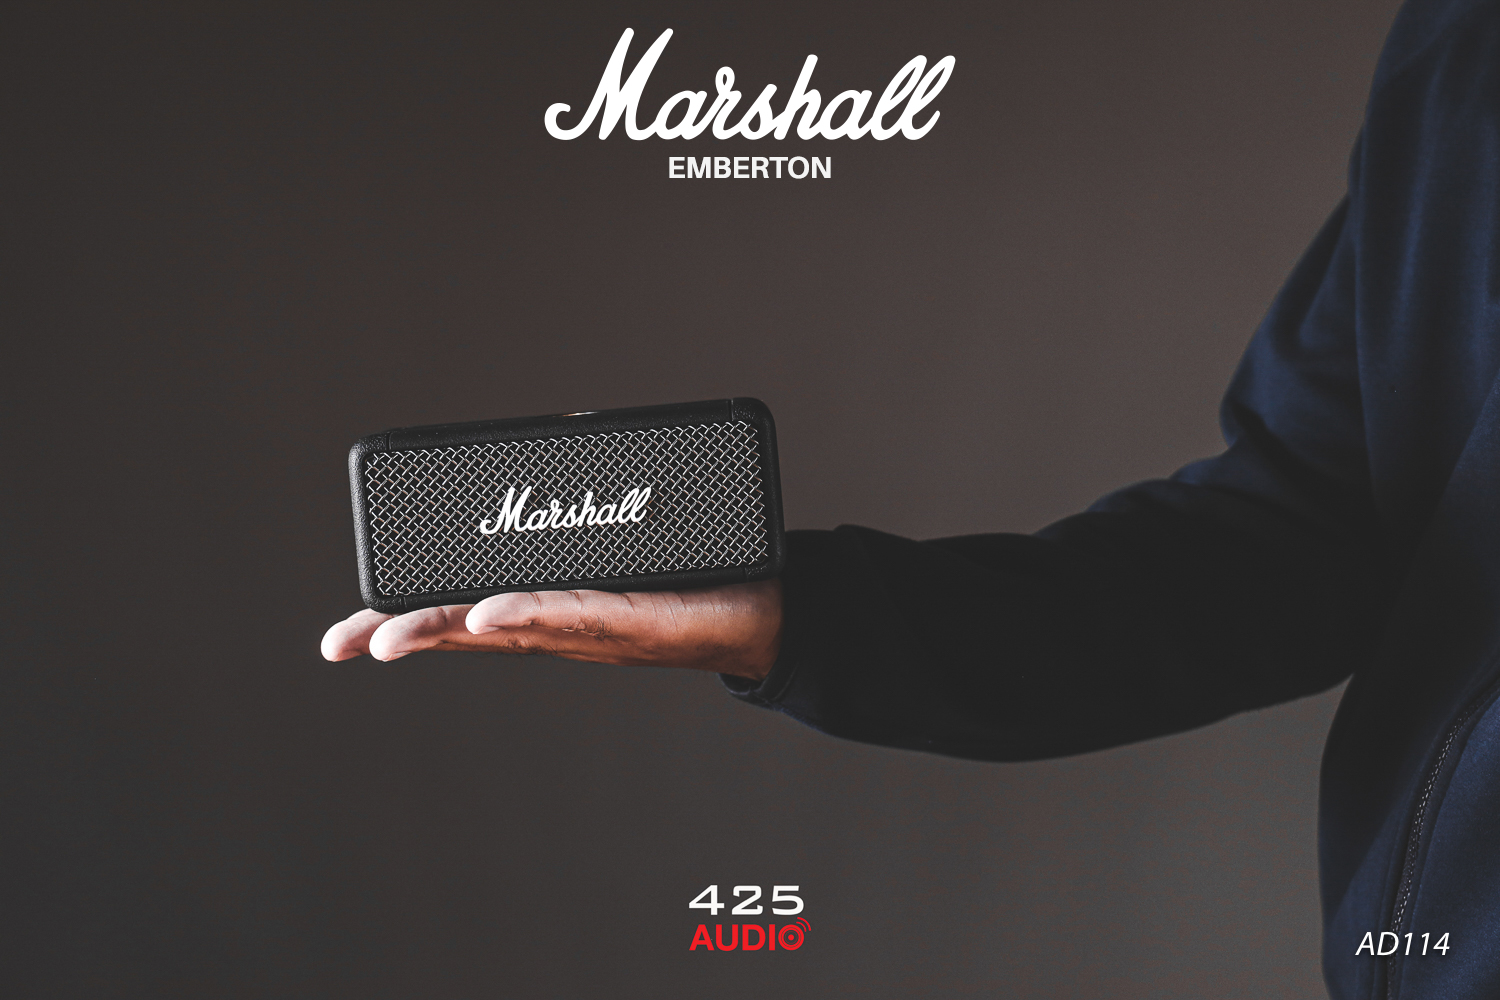 Marshall EMBERTON,emberton,marshall emberton,ลำโพง marshall,Bluetooth Speaker,ลำโพงกันน้ำ,ลำโพงพกพา,ลำโพงบลูทูธ